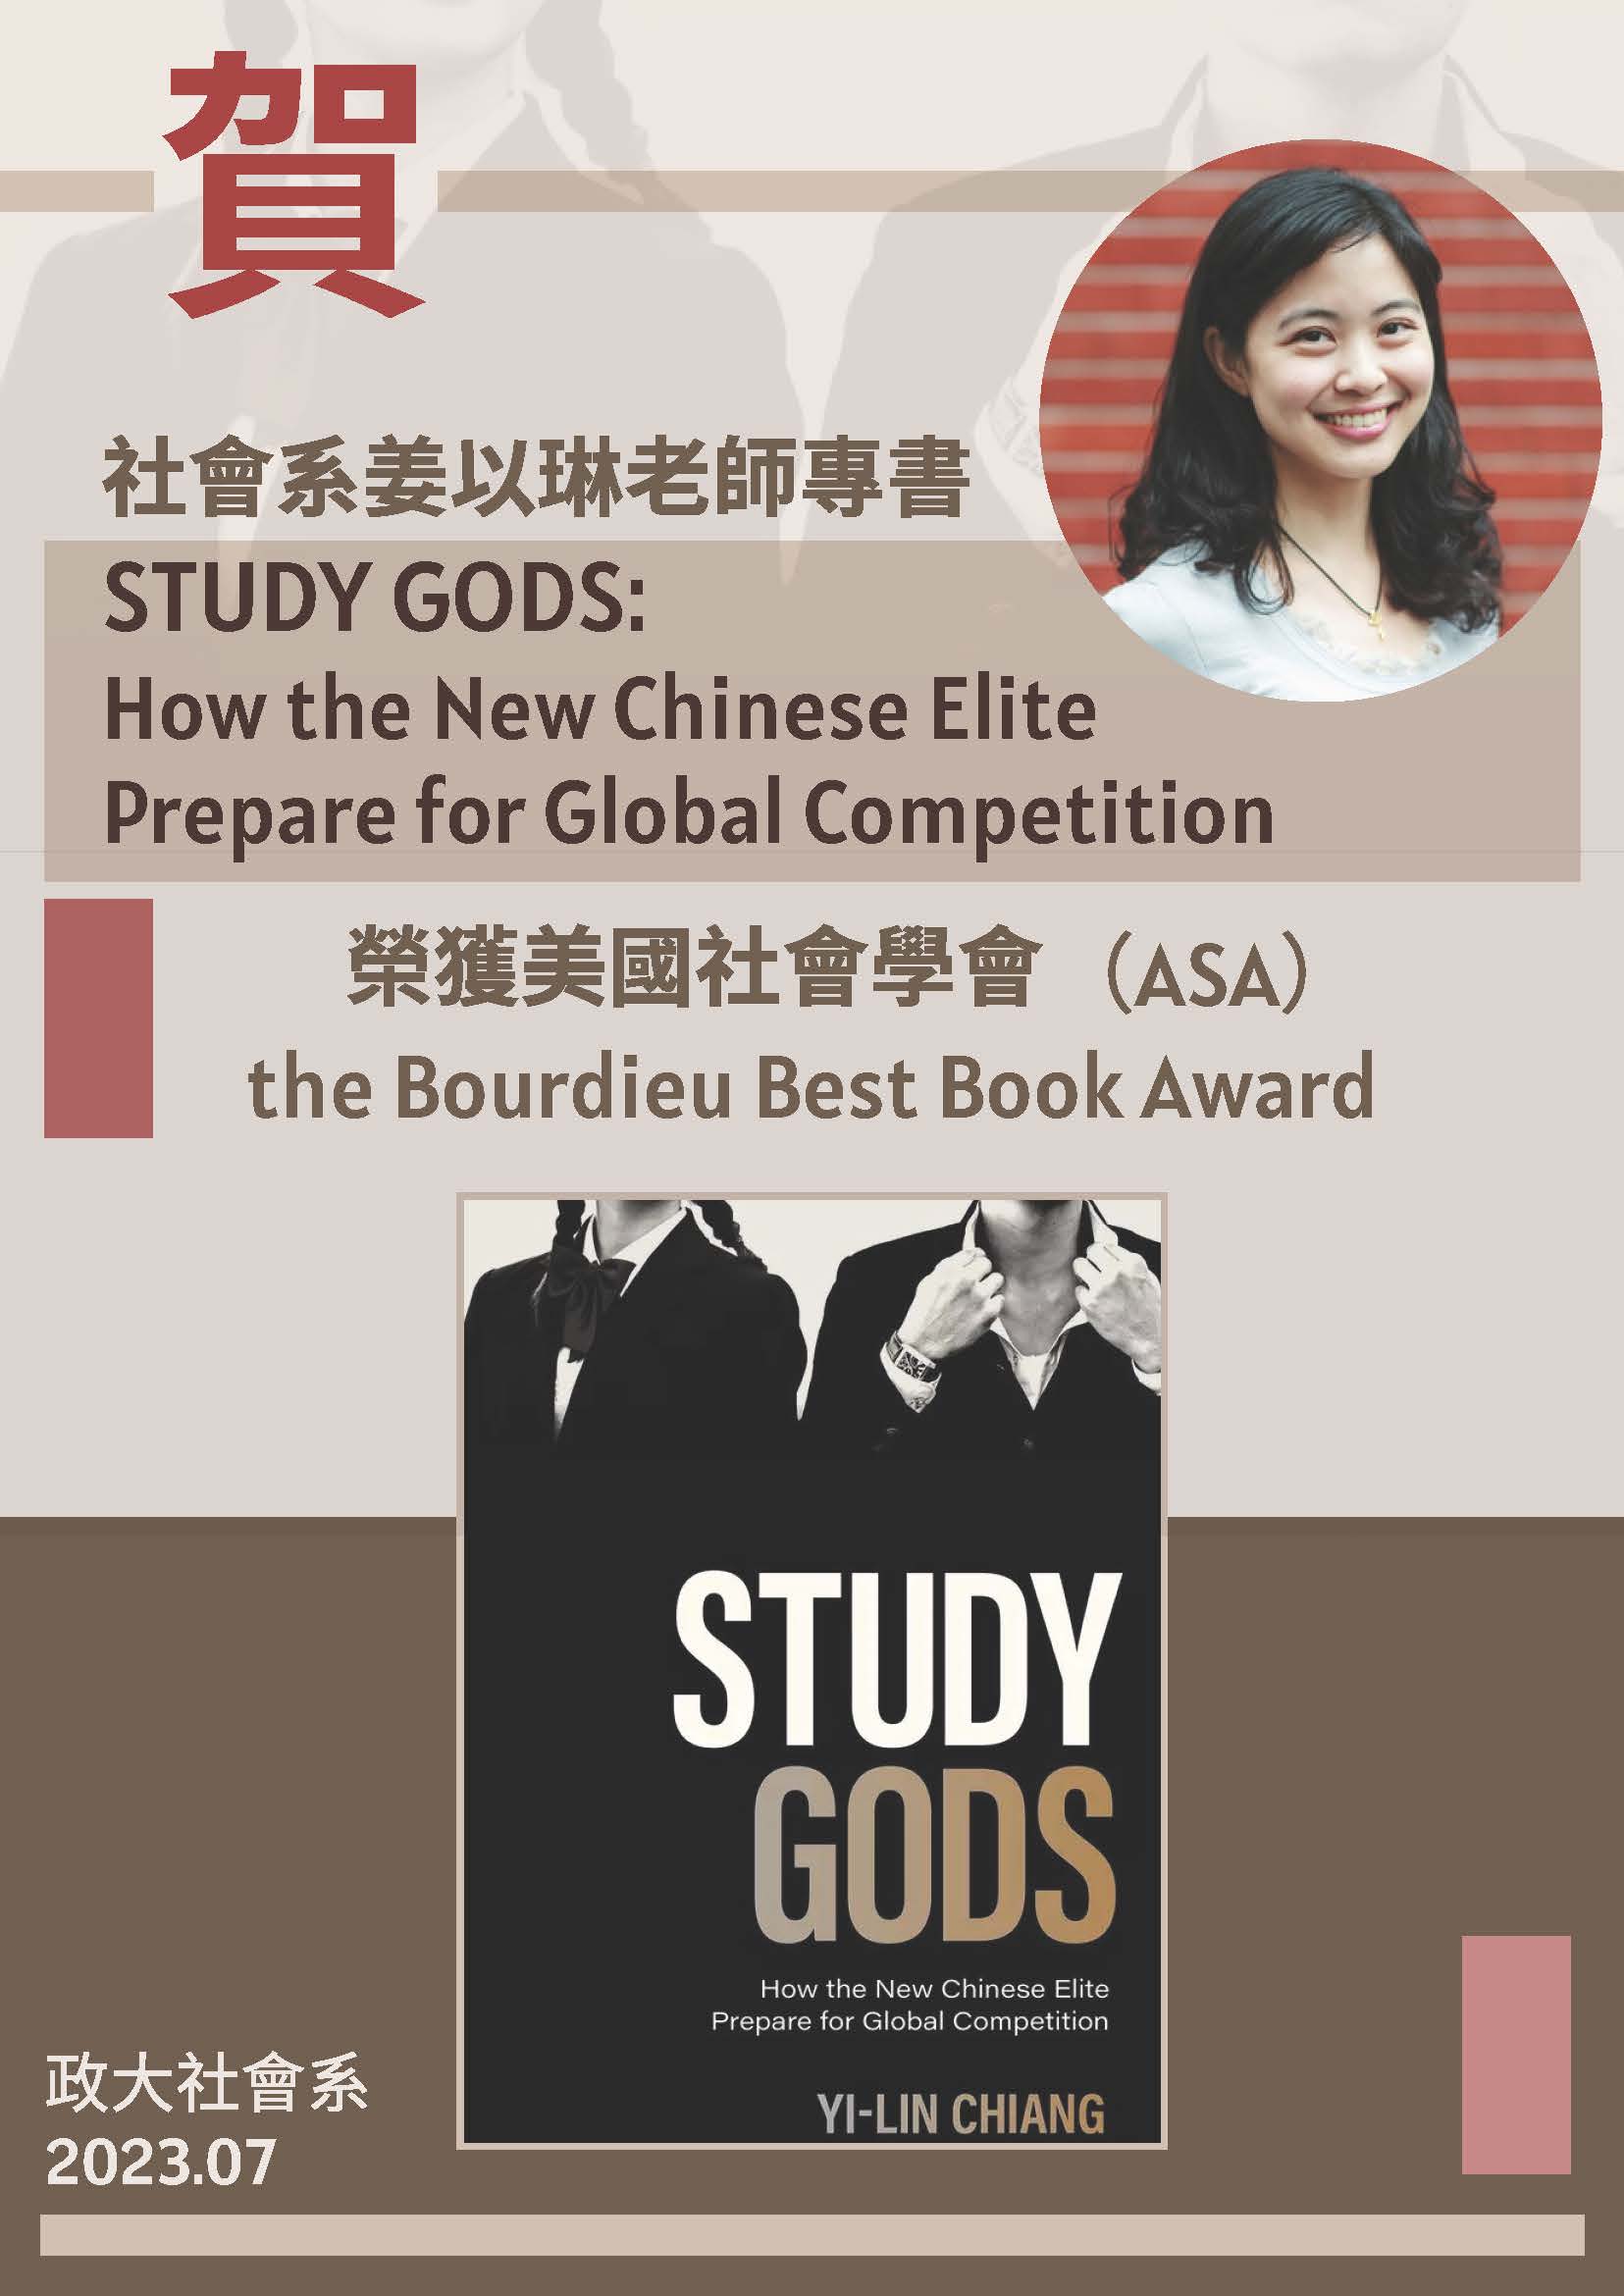 賀本系姜以琳老師專書 Study Gods榮獲美國社會學會 the Bourdieu Best Book Award